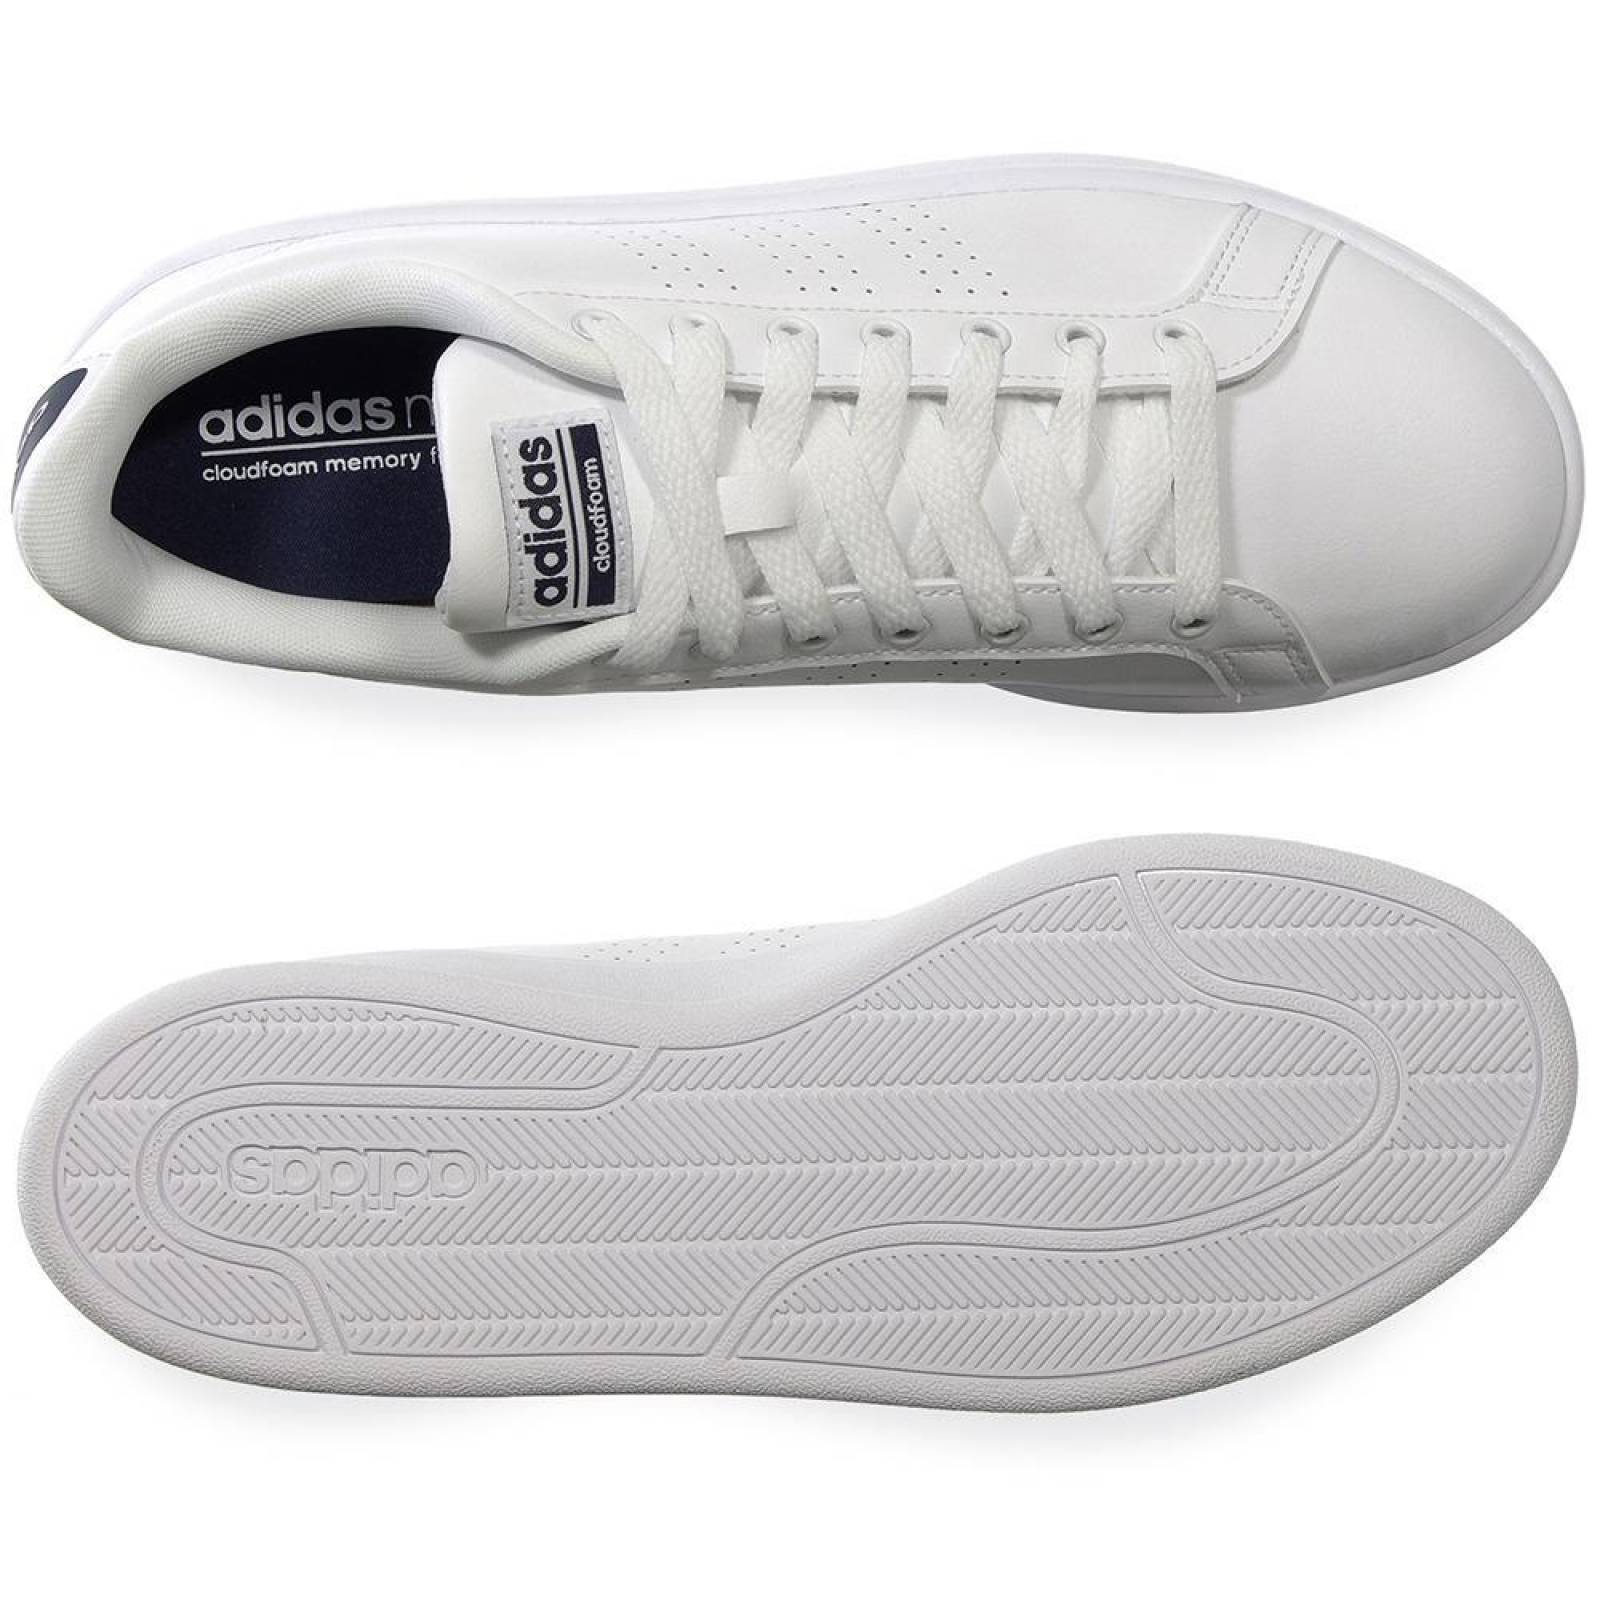 Tenis Adidas CF Advantage Clean - BB9624 - Blanco - Hombre 